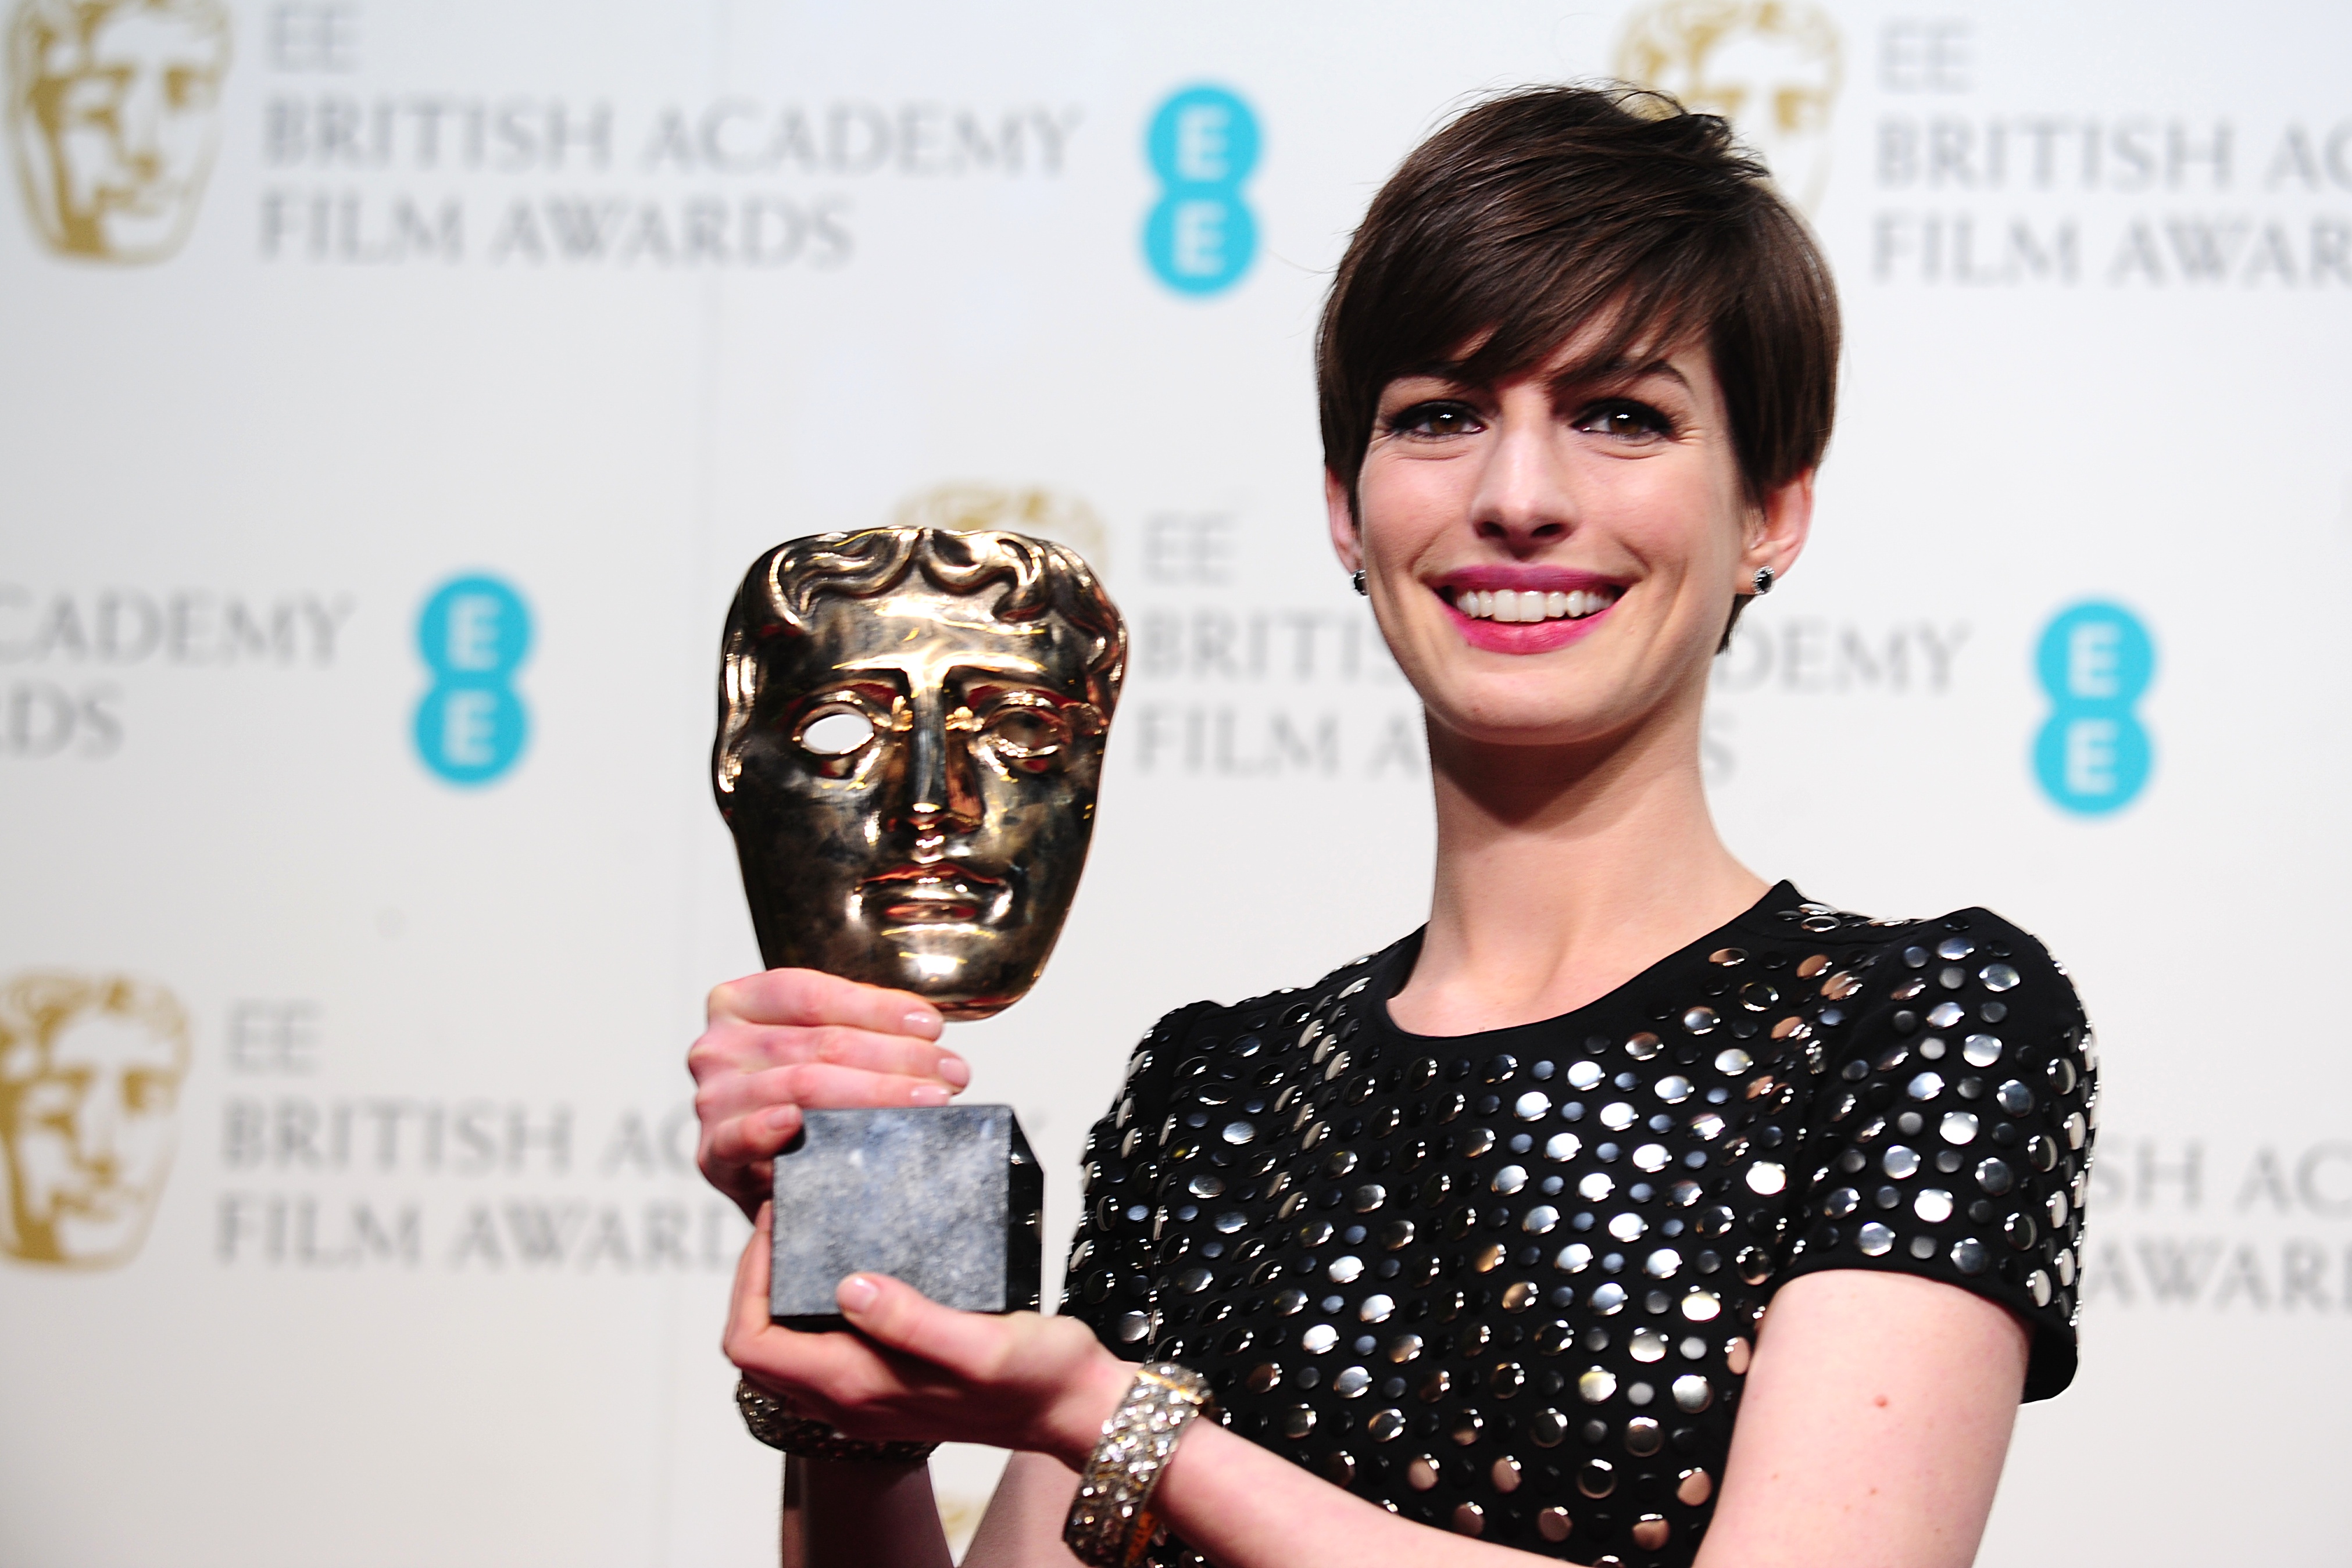 BAFTA Film Awards 2013